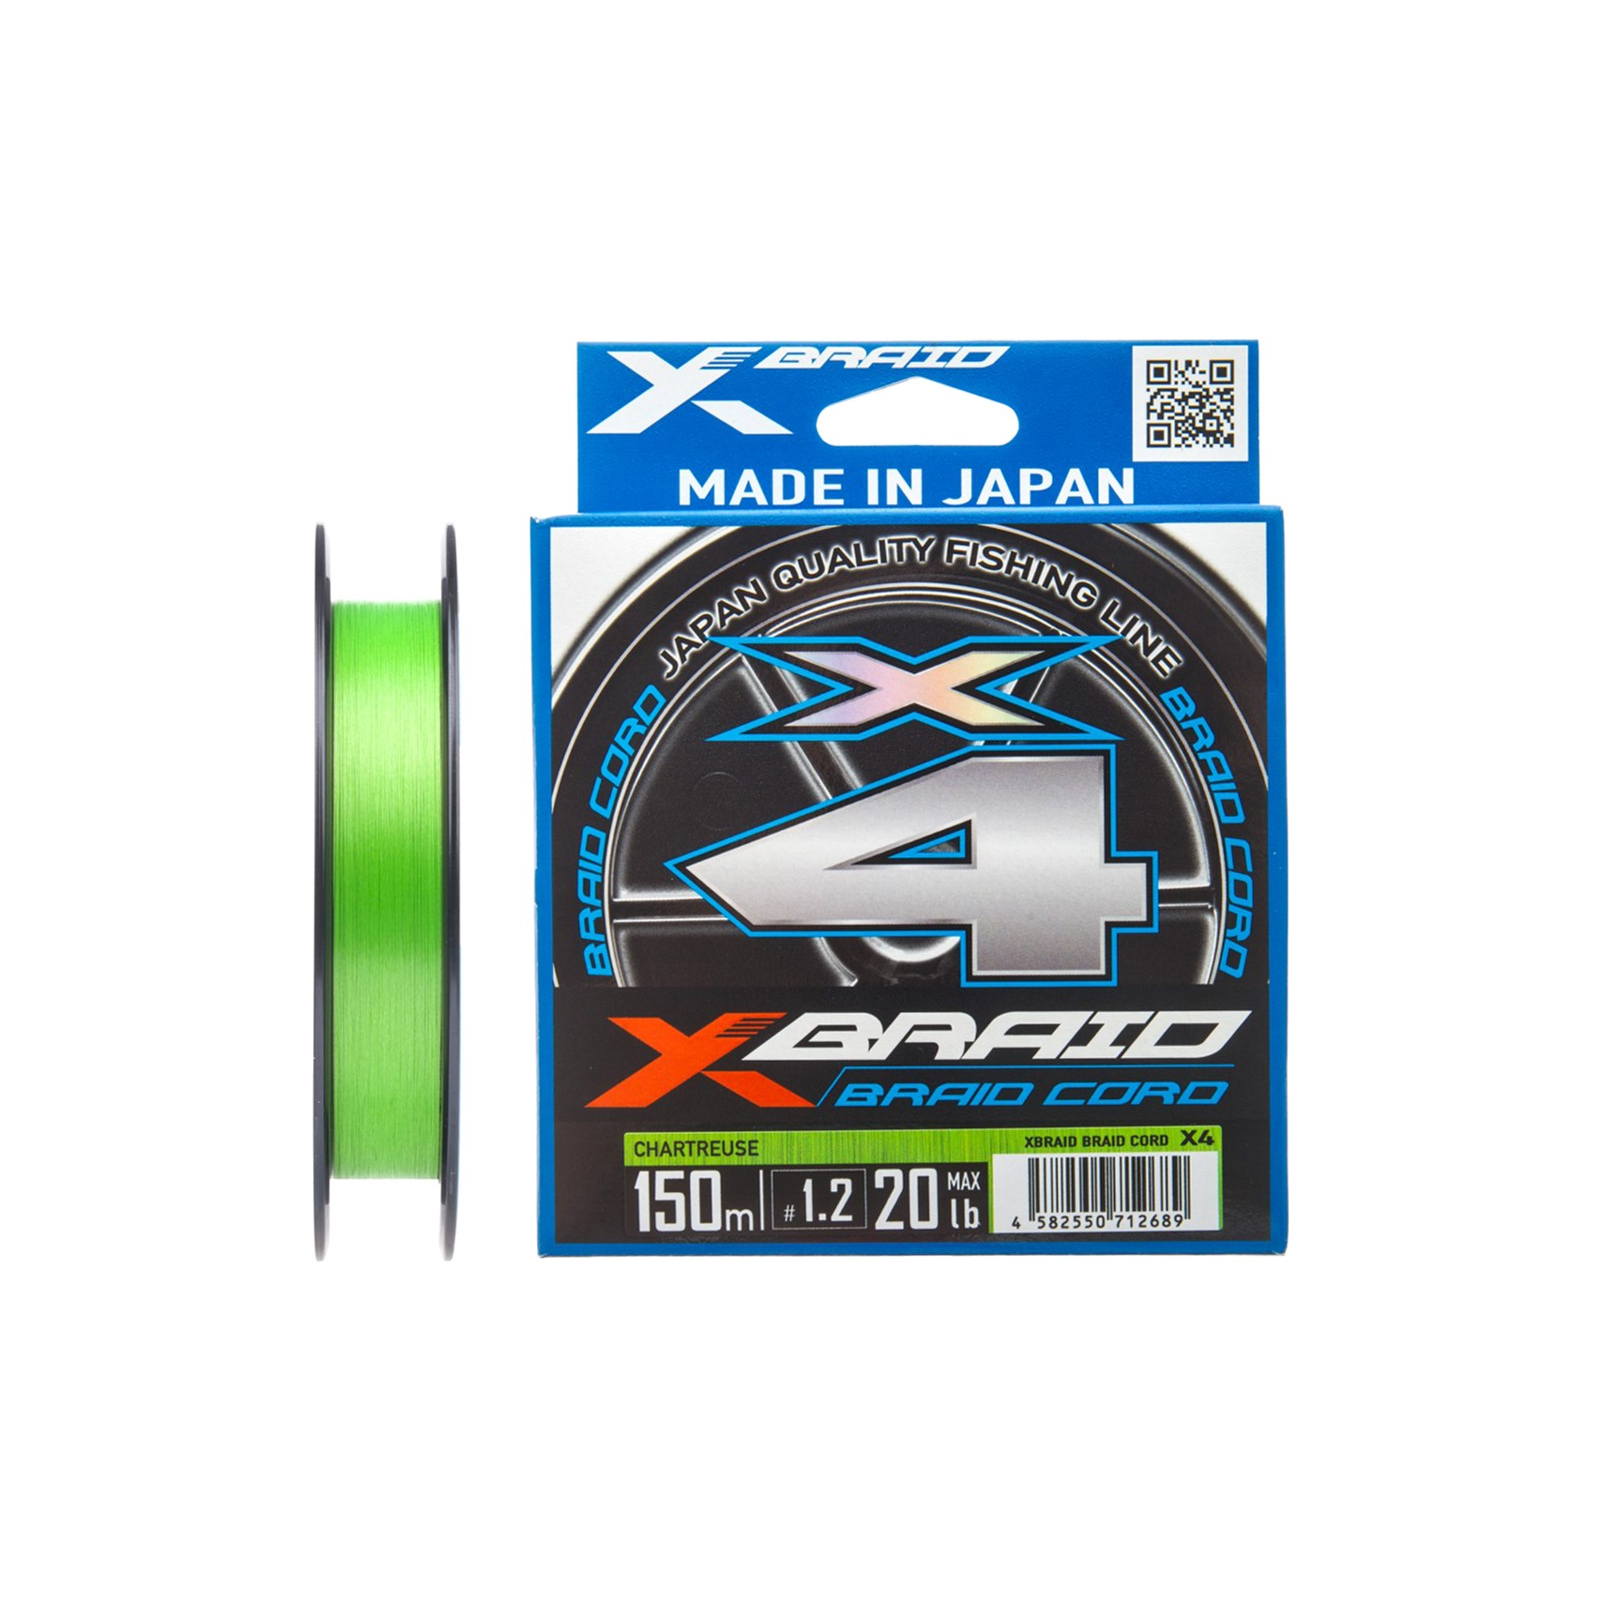 Шнур YGK X-Braid Braid Cord X4 150m 0.3/0.09mm 6lb/2.7kg (5545.03.56)